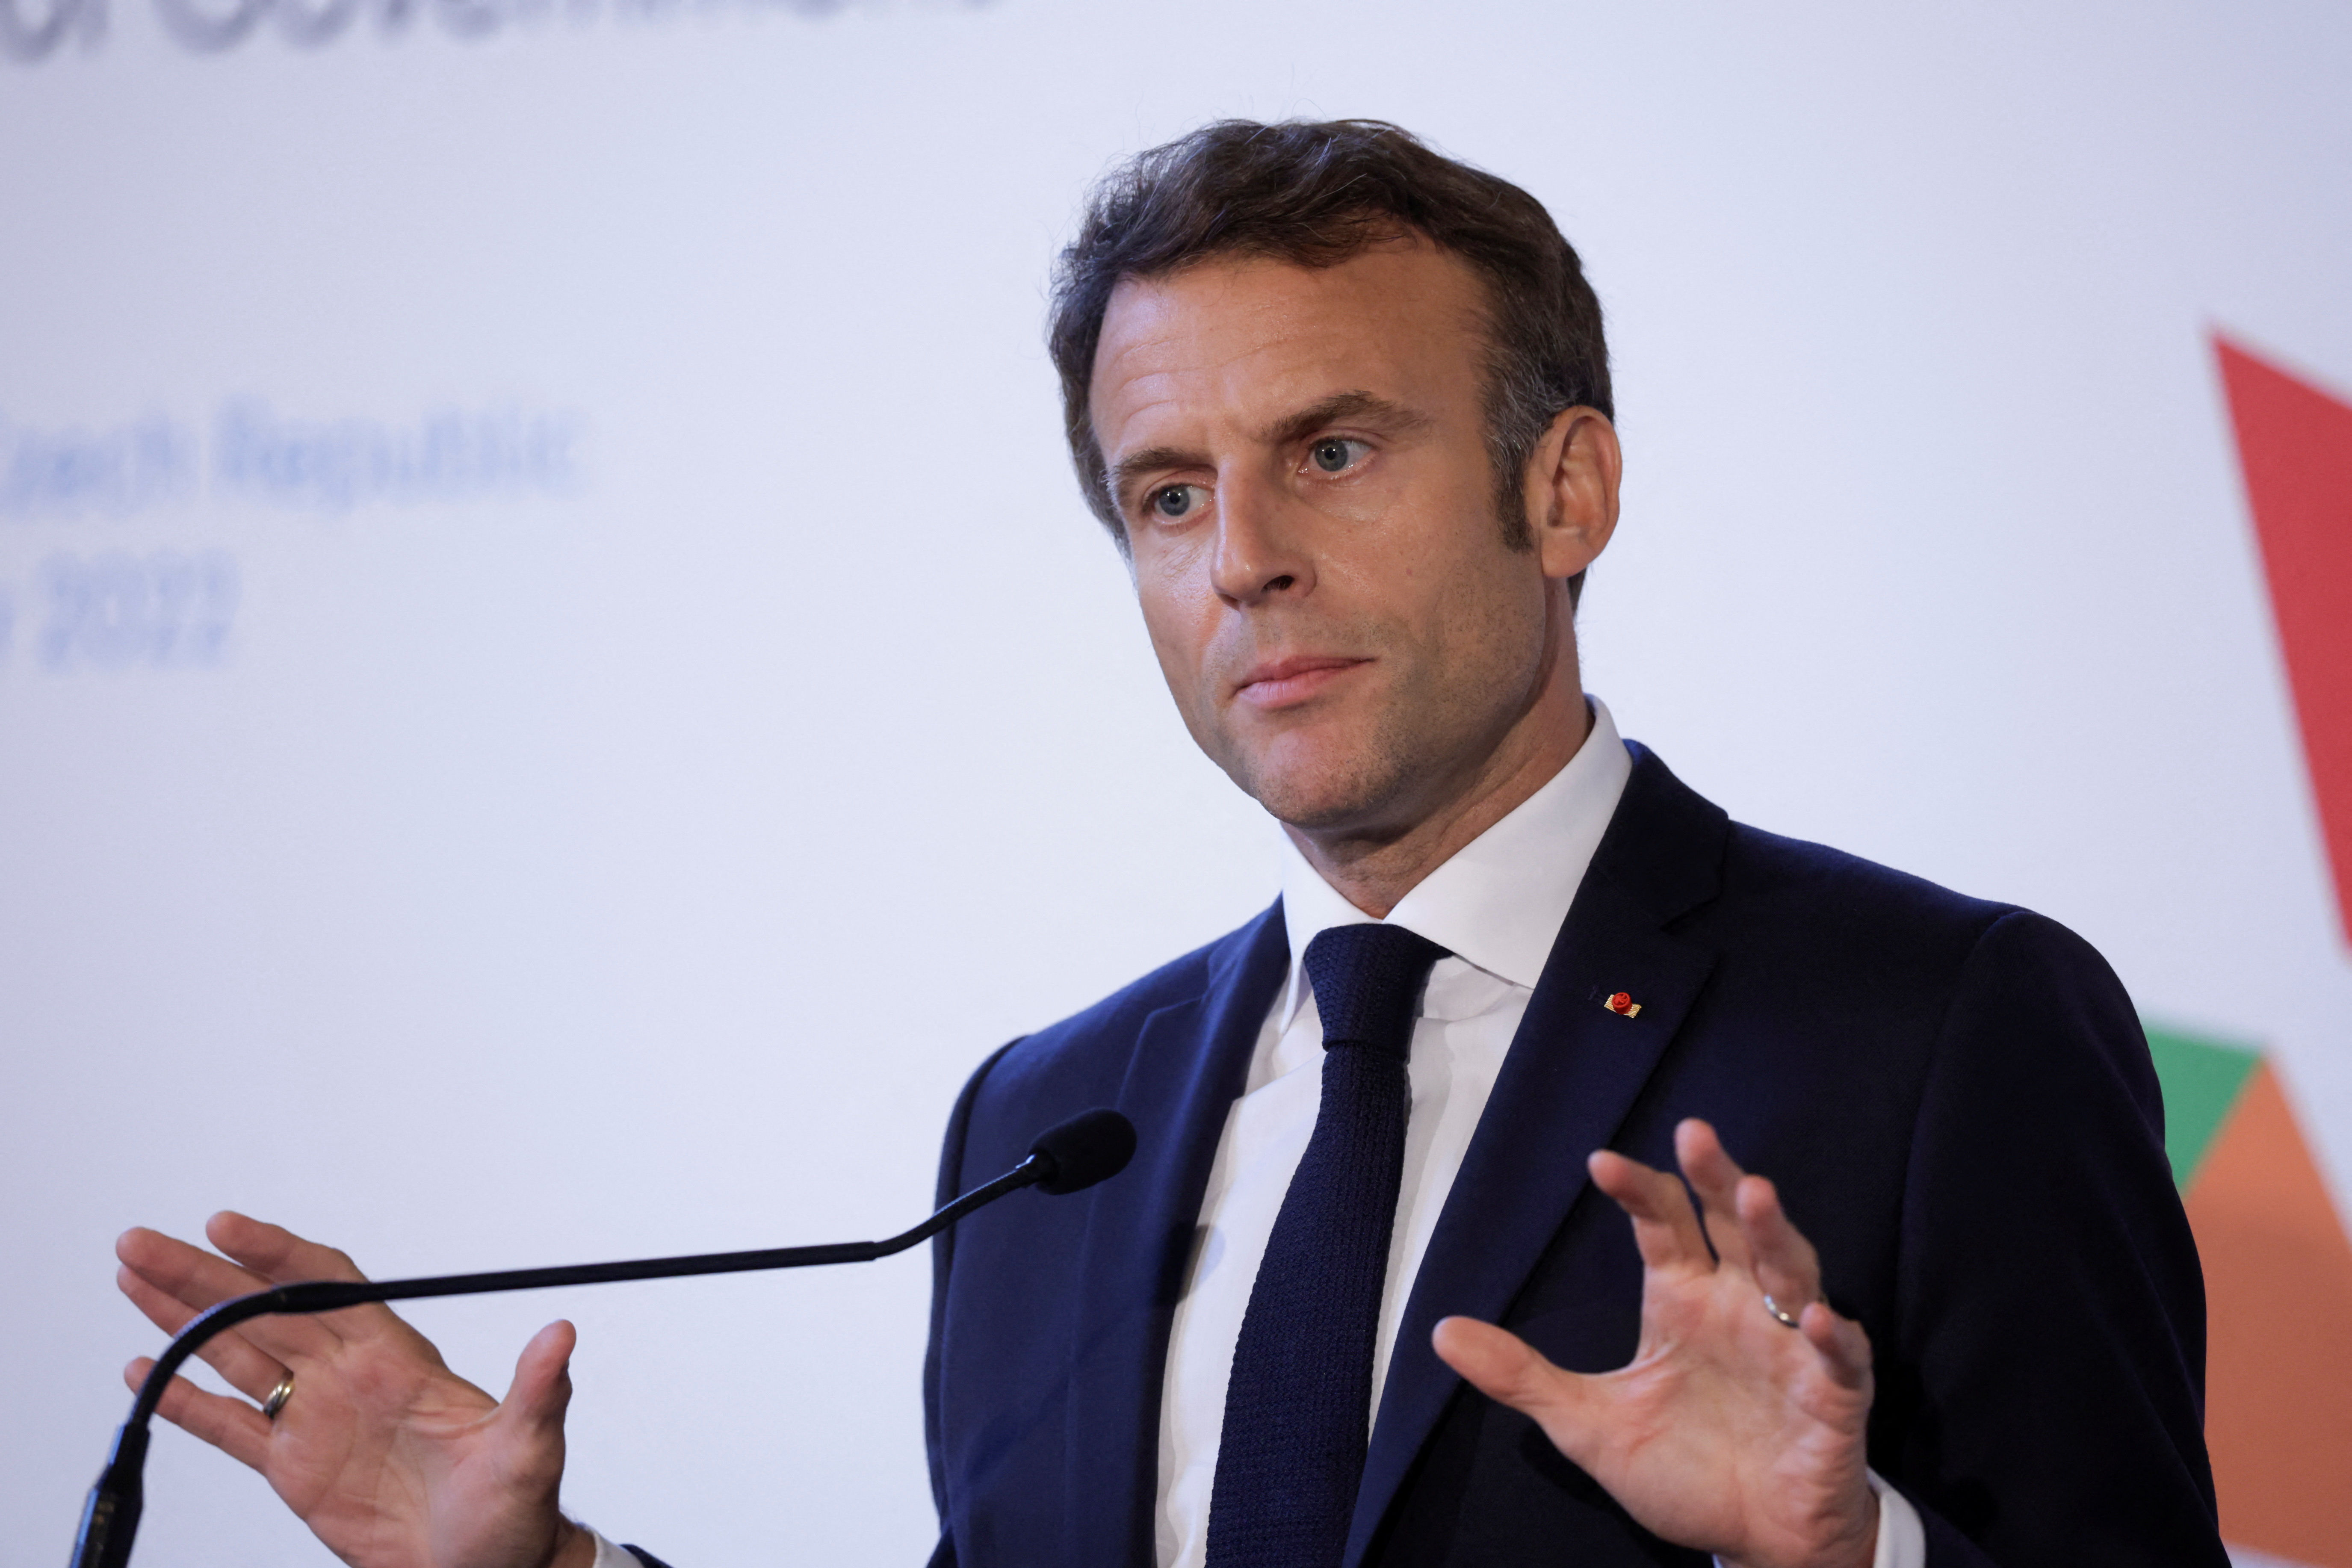 Ne pas « briser la demande » : l'inquiétude d'Emmanuel Macron face à la hausse des taux de la BCE